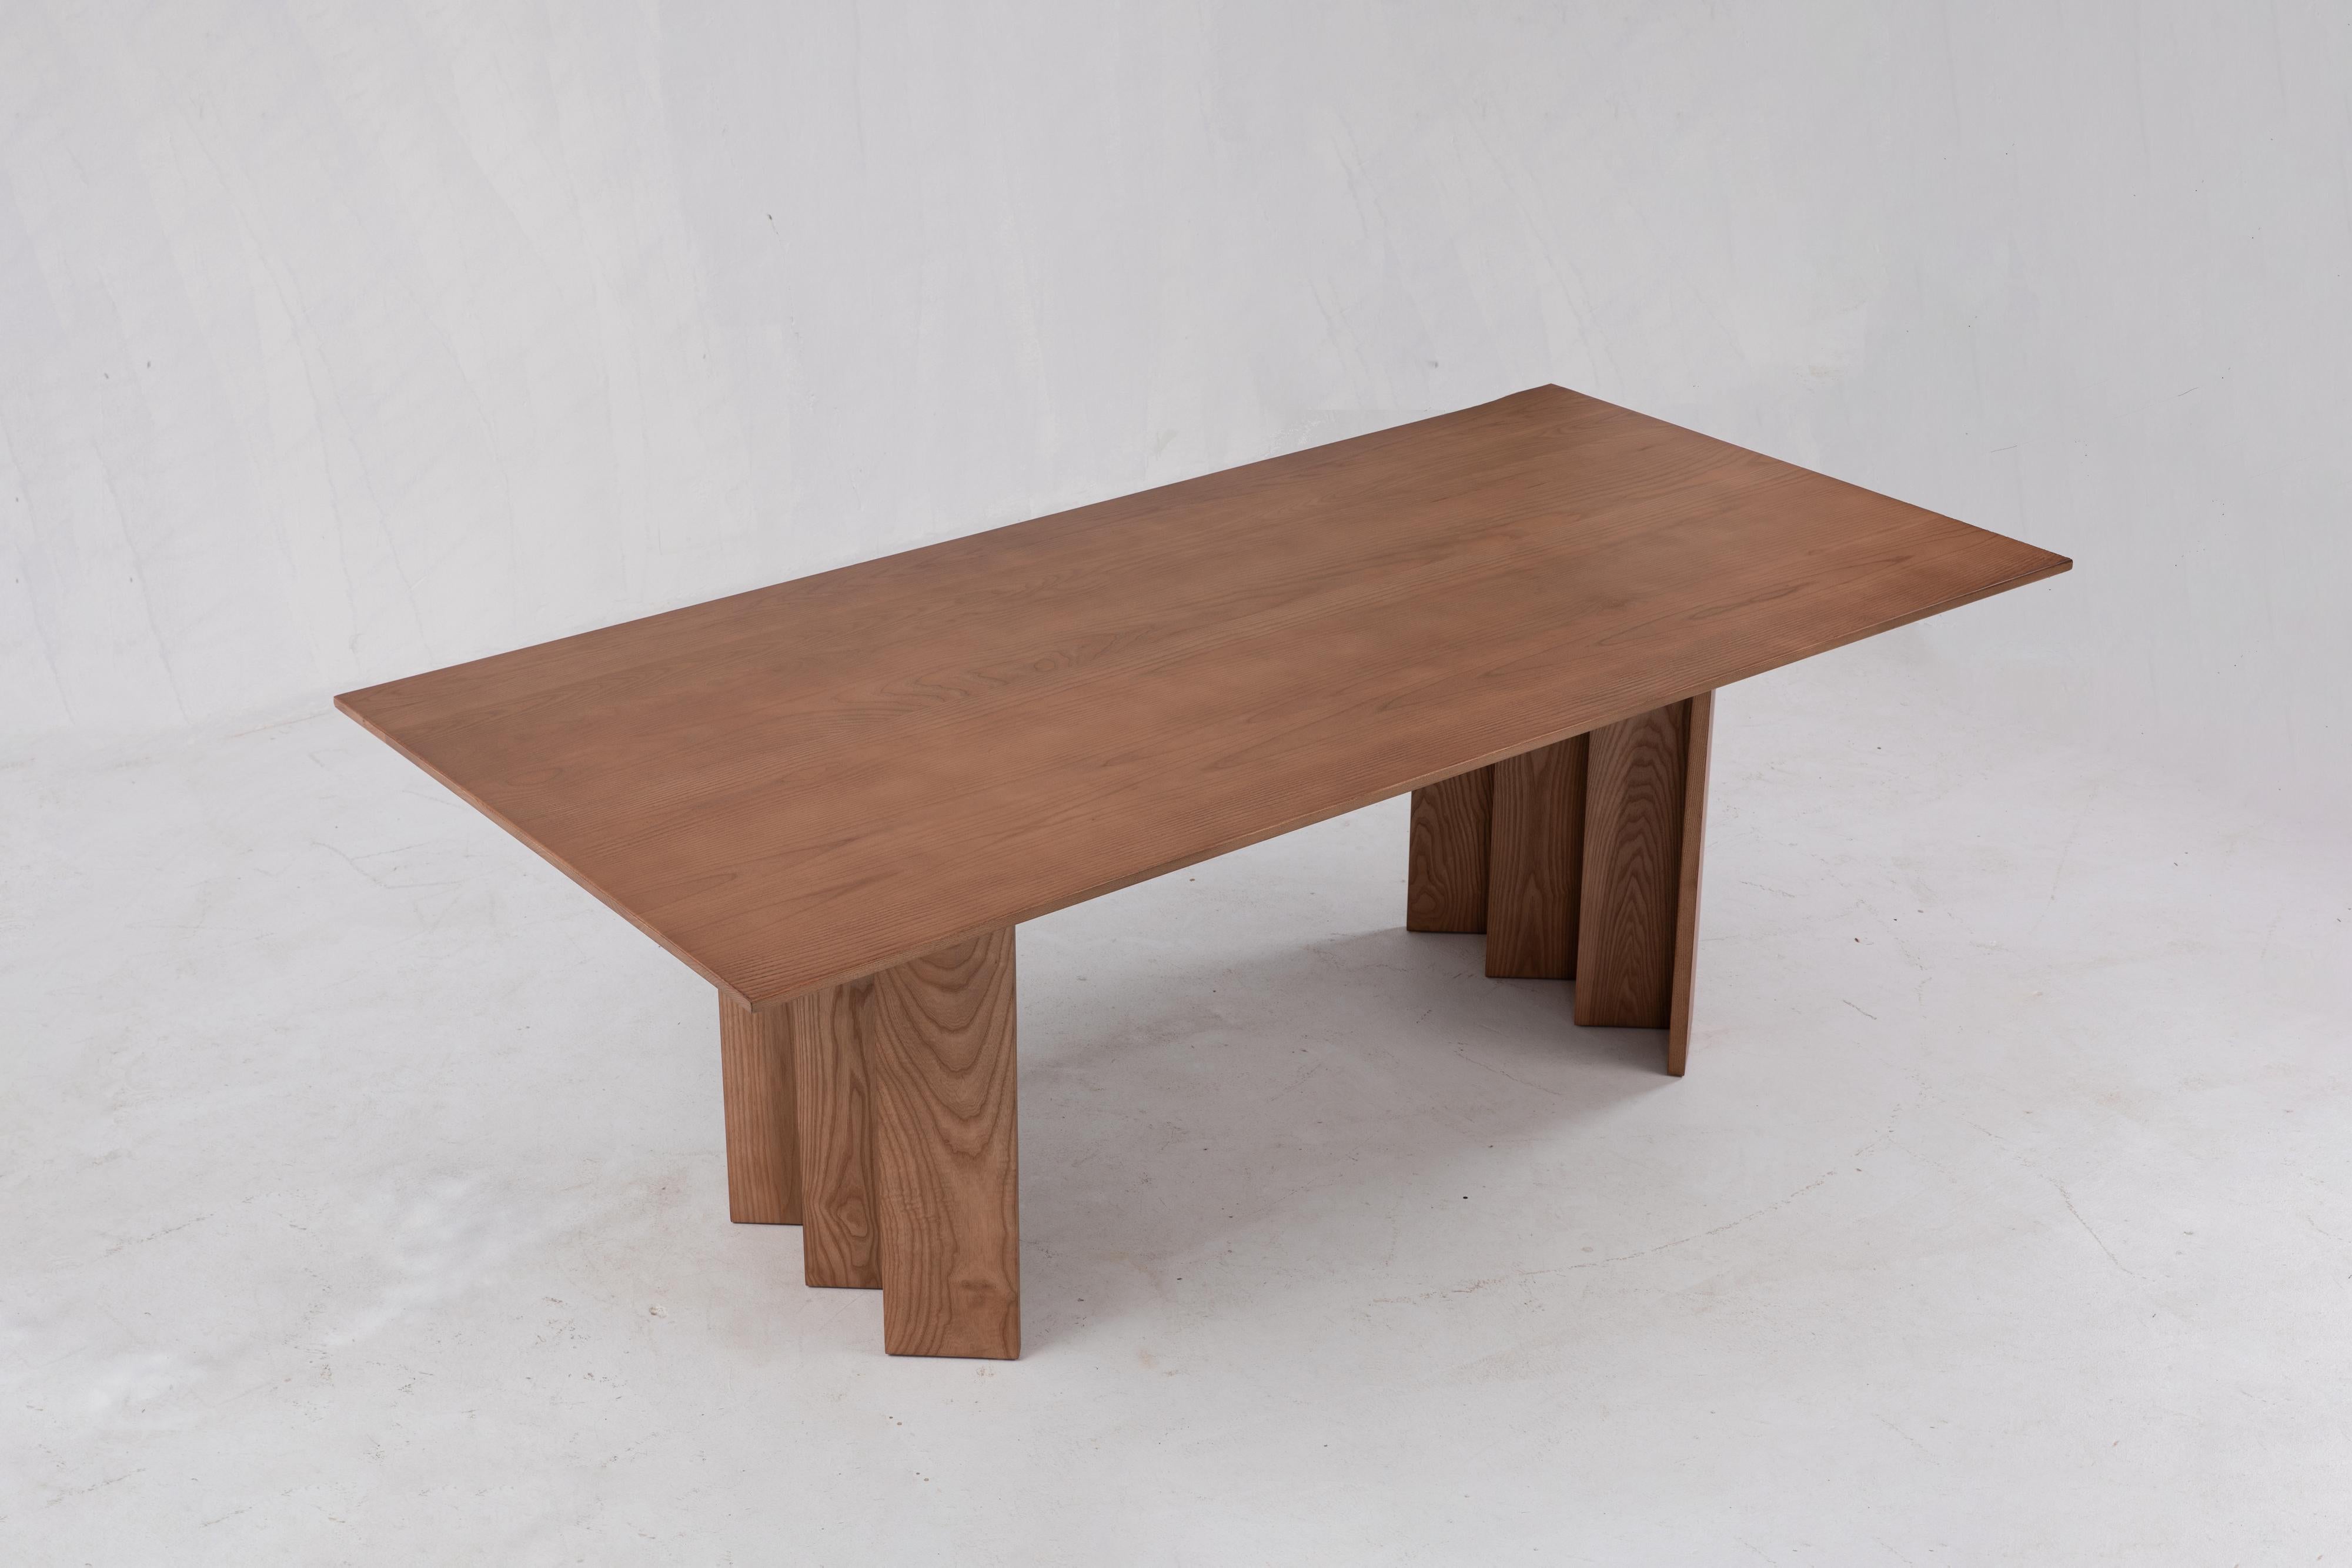 Sun at Six ist ein Studio für zeitgenössisches Möbeldesign, das mit traditionellen chinesischen Tischlermeistern zusammenarbeitet, um unsere Stücke in Handarbeit zu fertigen, wobei traditionelle Tischlerarbeiten verwendet werden. 

Großartige Möbel